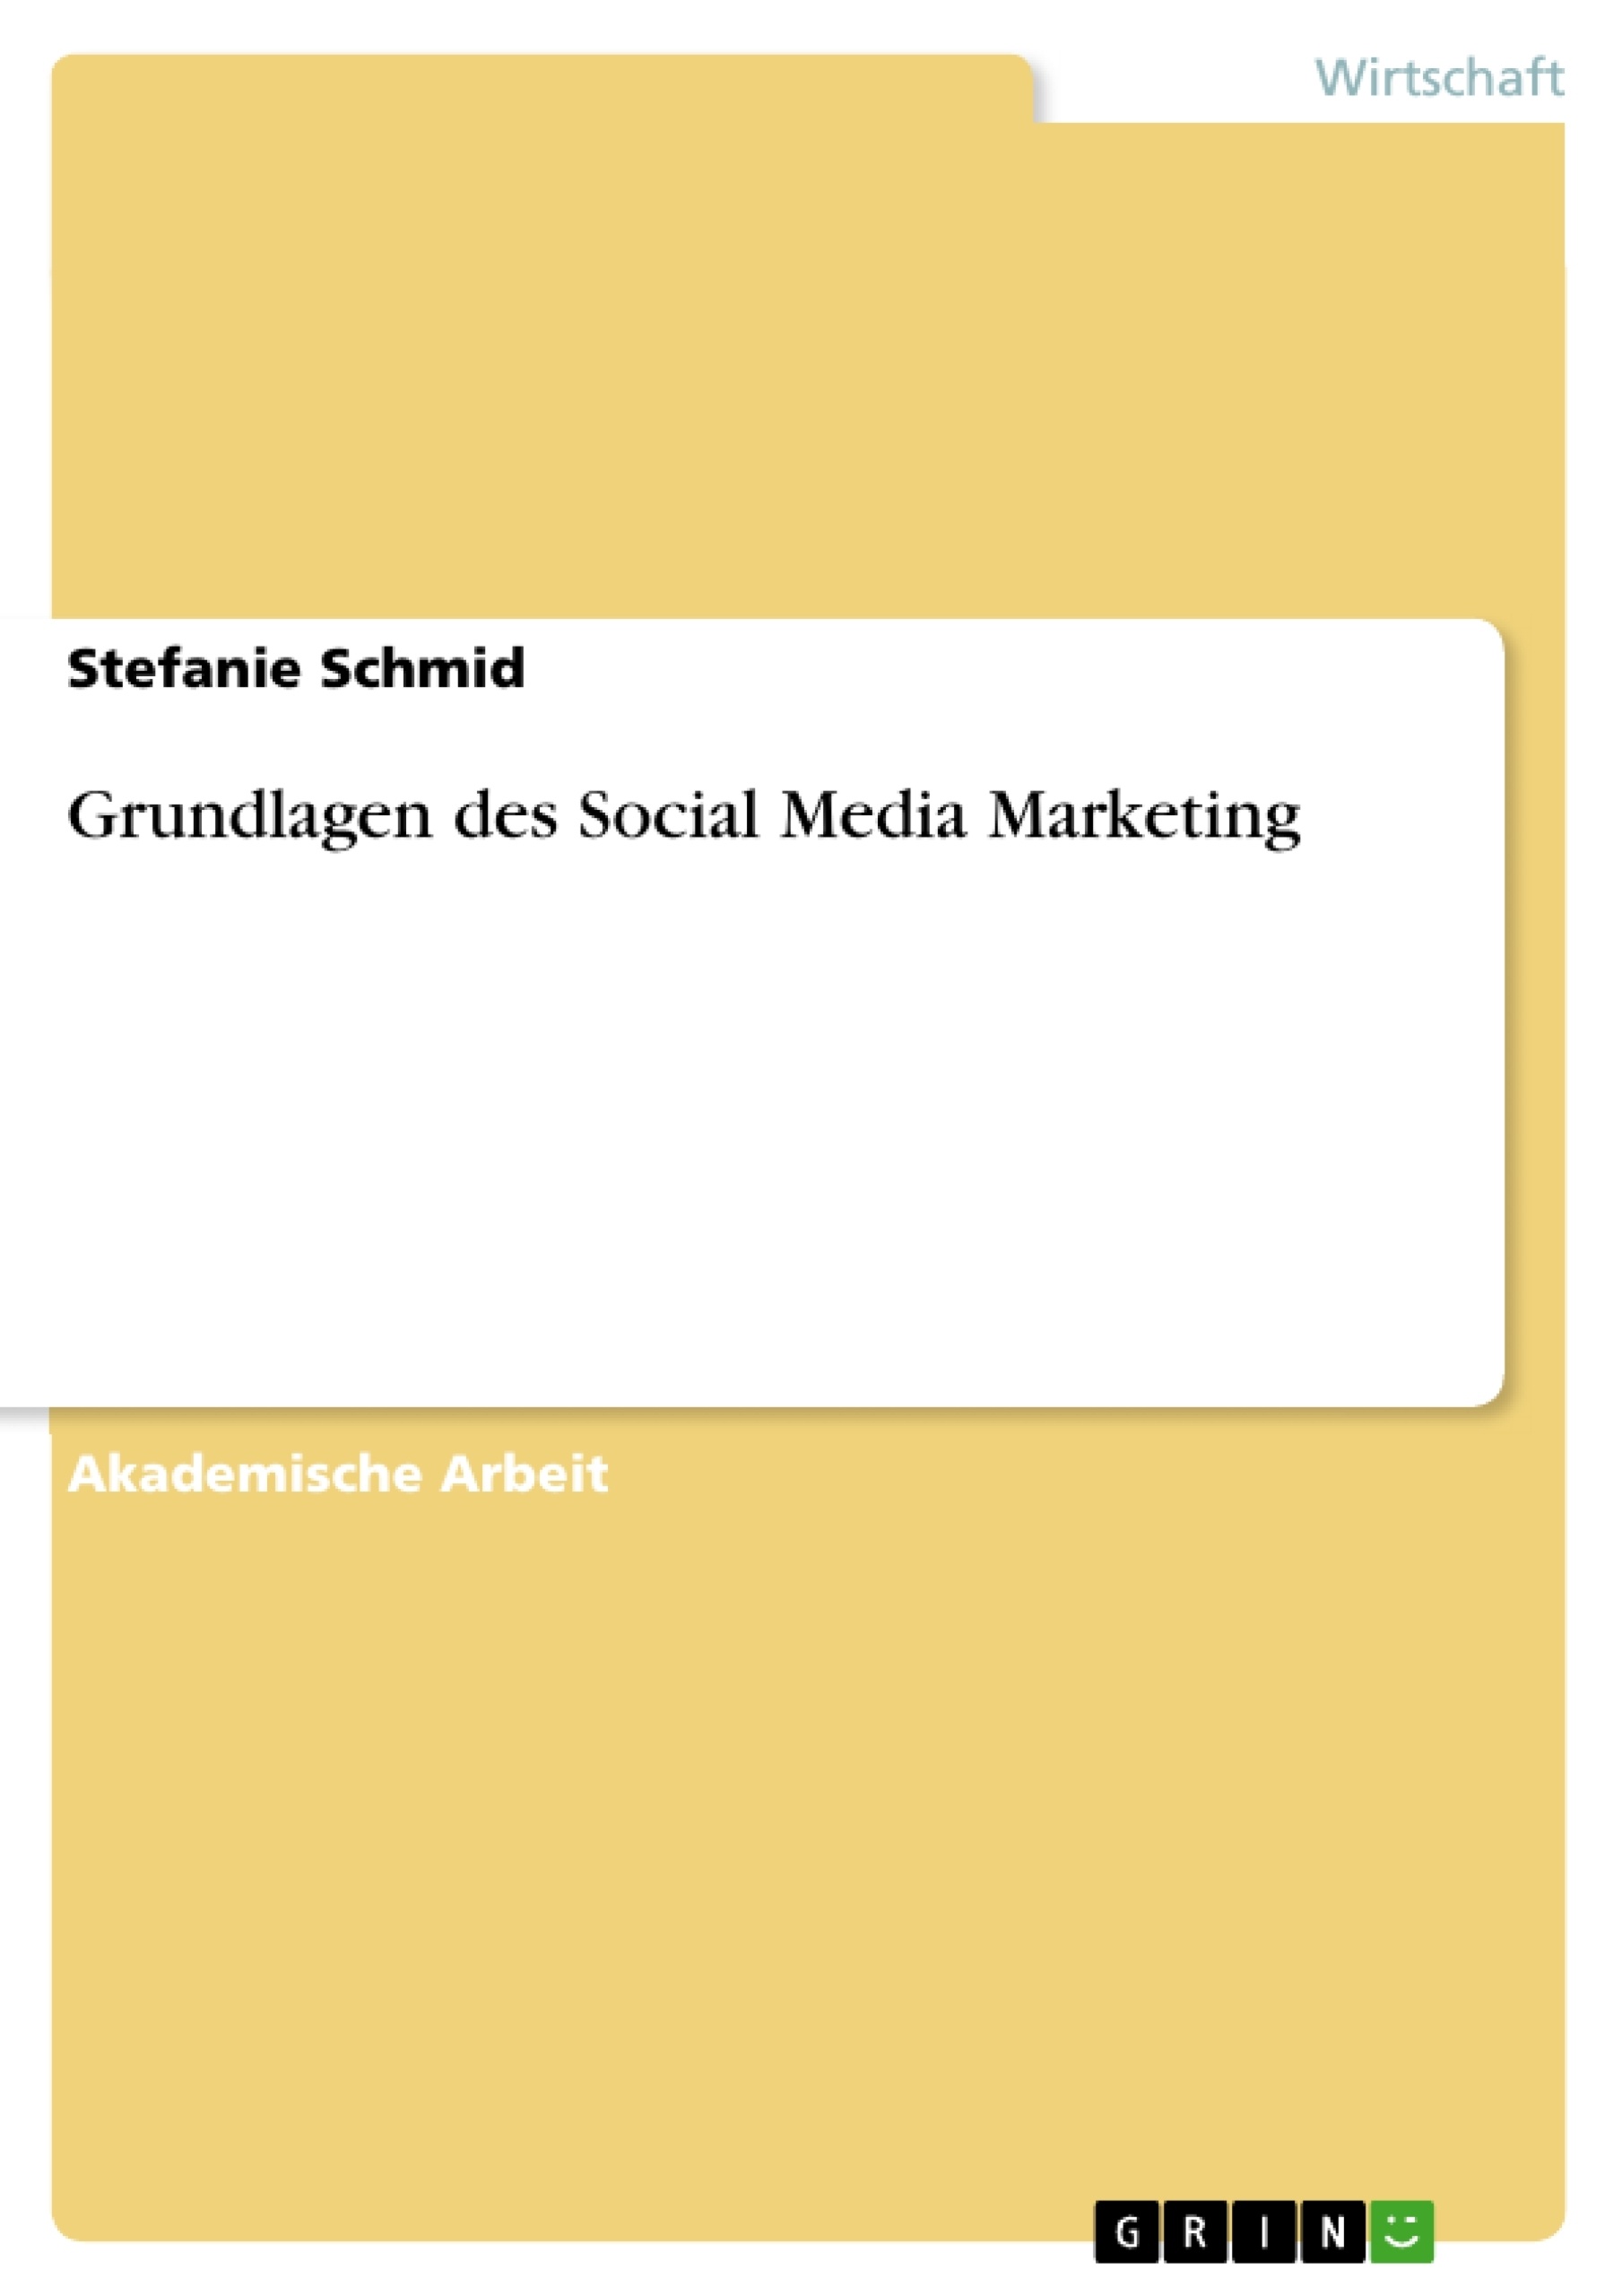 Título: Grundlagen des Social Media Marketing